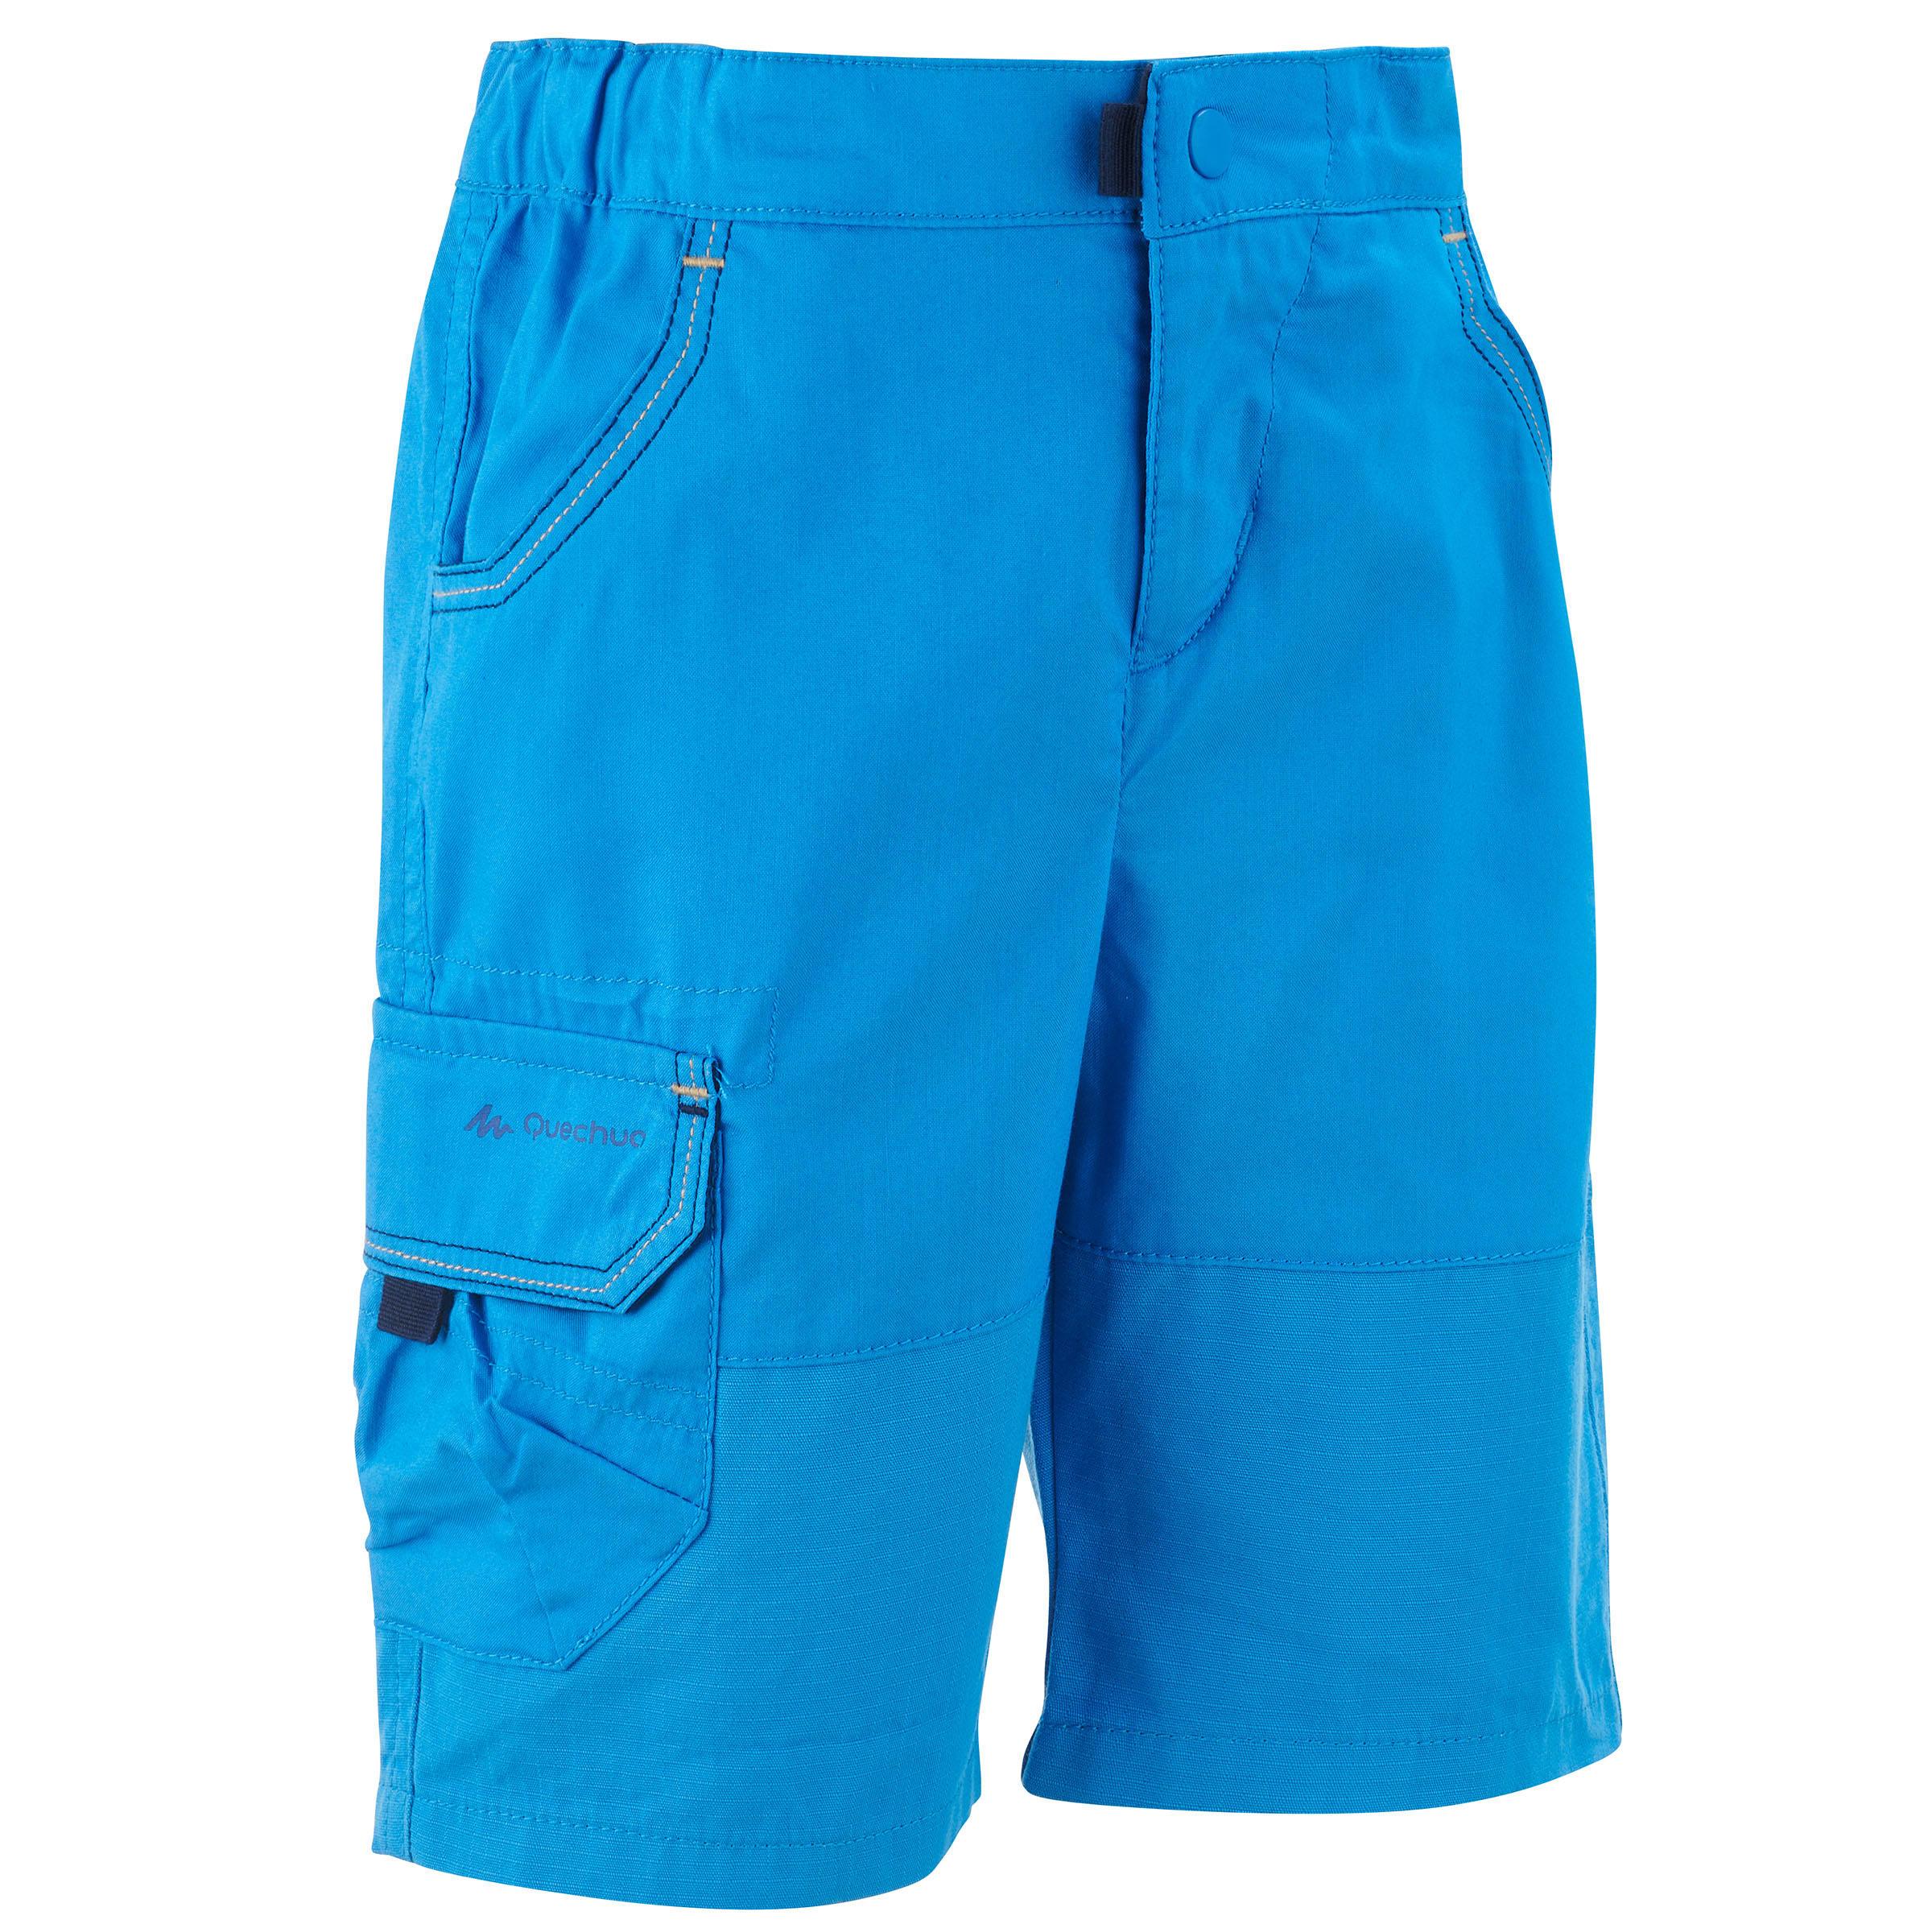 [ด่วน!! โปรโมชั่นมีจำนวนจำกัด] กางเกงขาสั้นเพื่อการเดินป่ารุ่น MH500 สำหรับเด็กอายุ 2 ถึง 6 ปี (สีฟ้า) สำหรับ เดินป่า